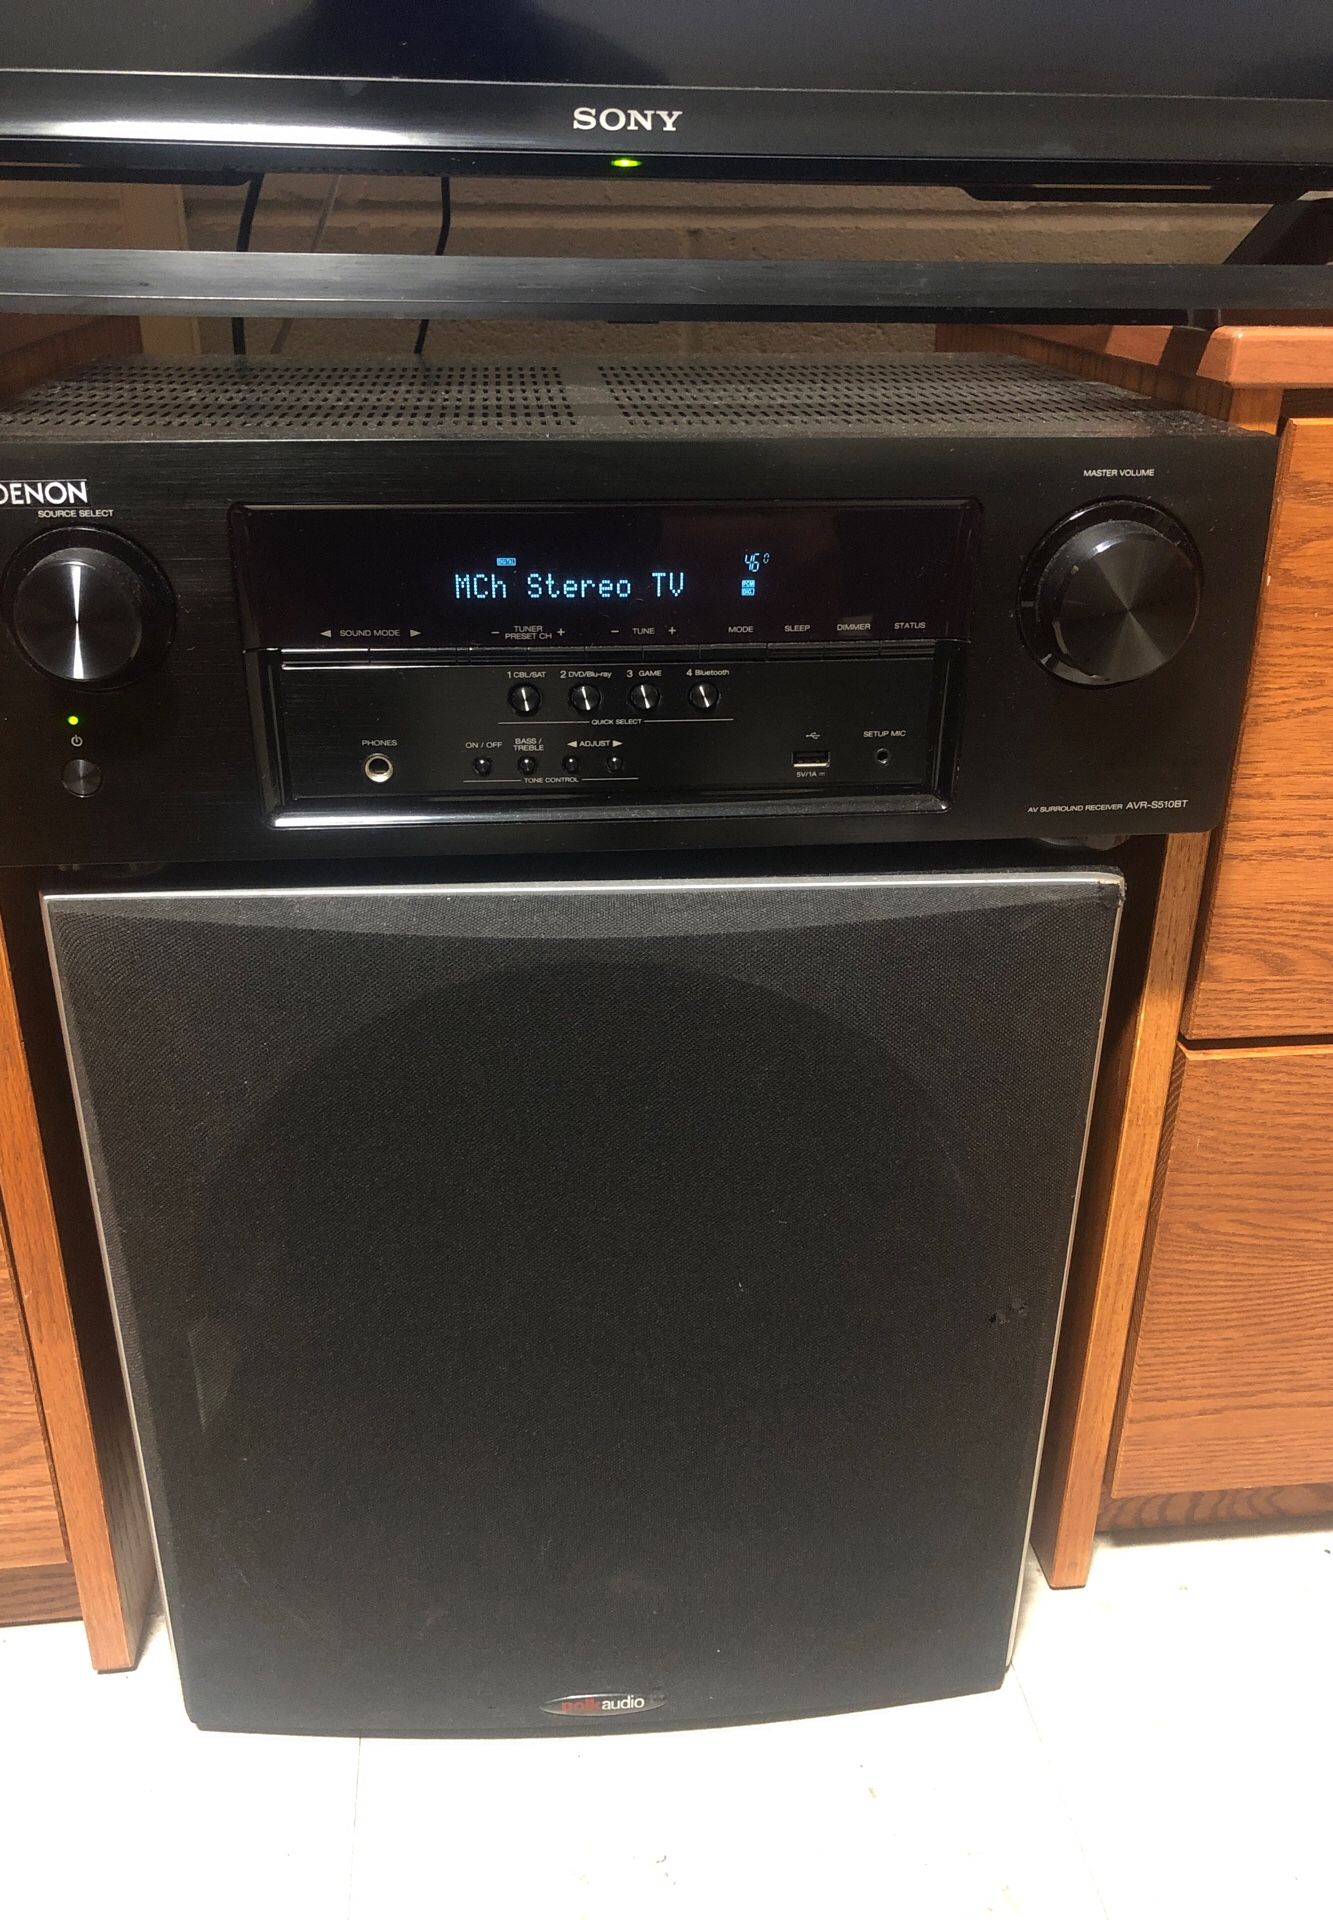 Polk audio surround sound with Denon stereo receiver